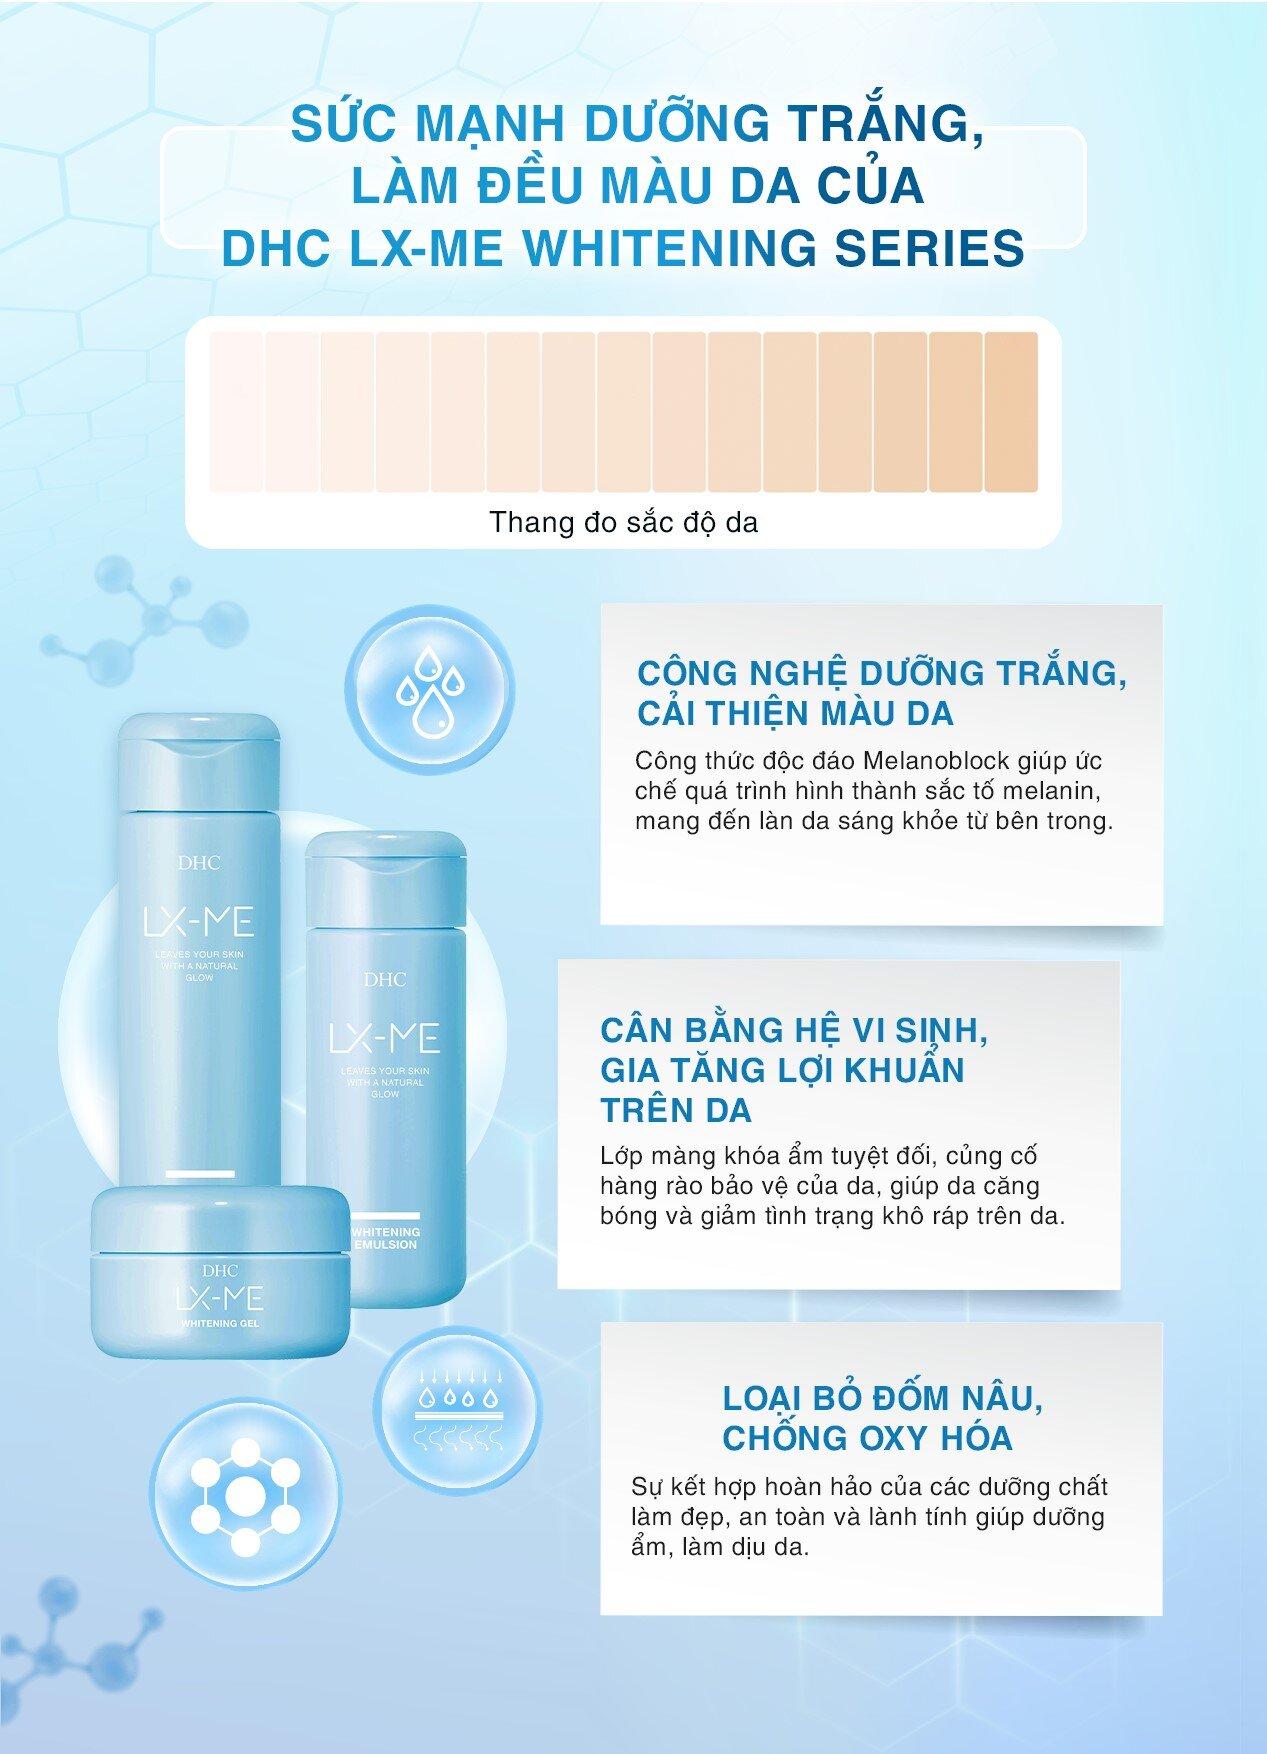 Bộ ba sản phẩm DHC LX-ME Whitening Series có thể kết hợp cùng nhau để mang lại hiệu quả tốt nhất cho da. Nguồn: Internet